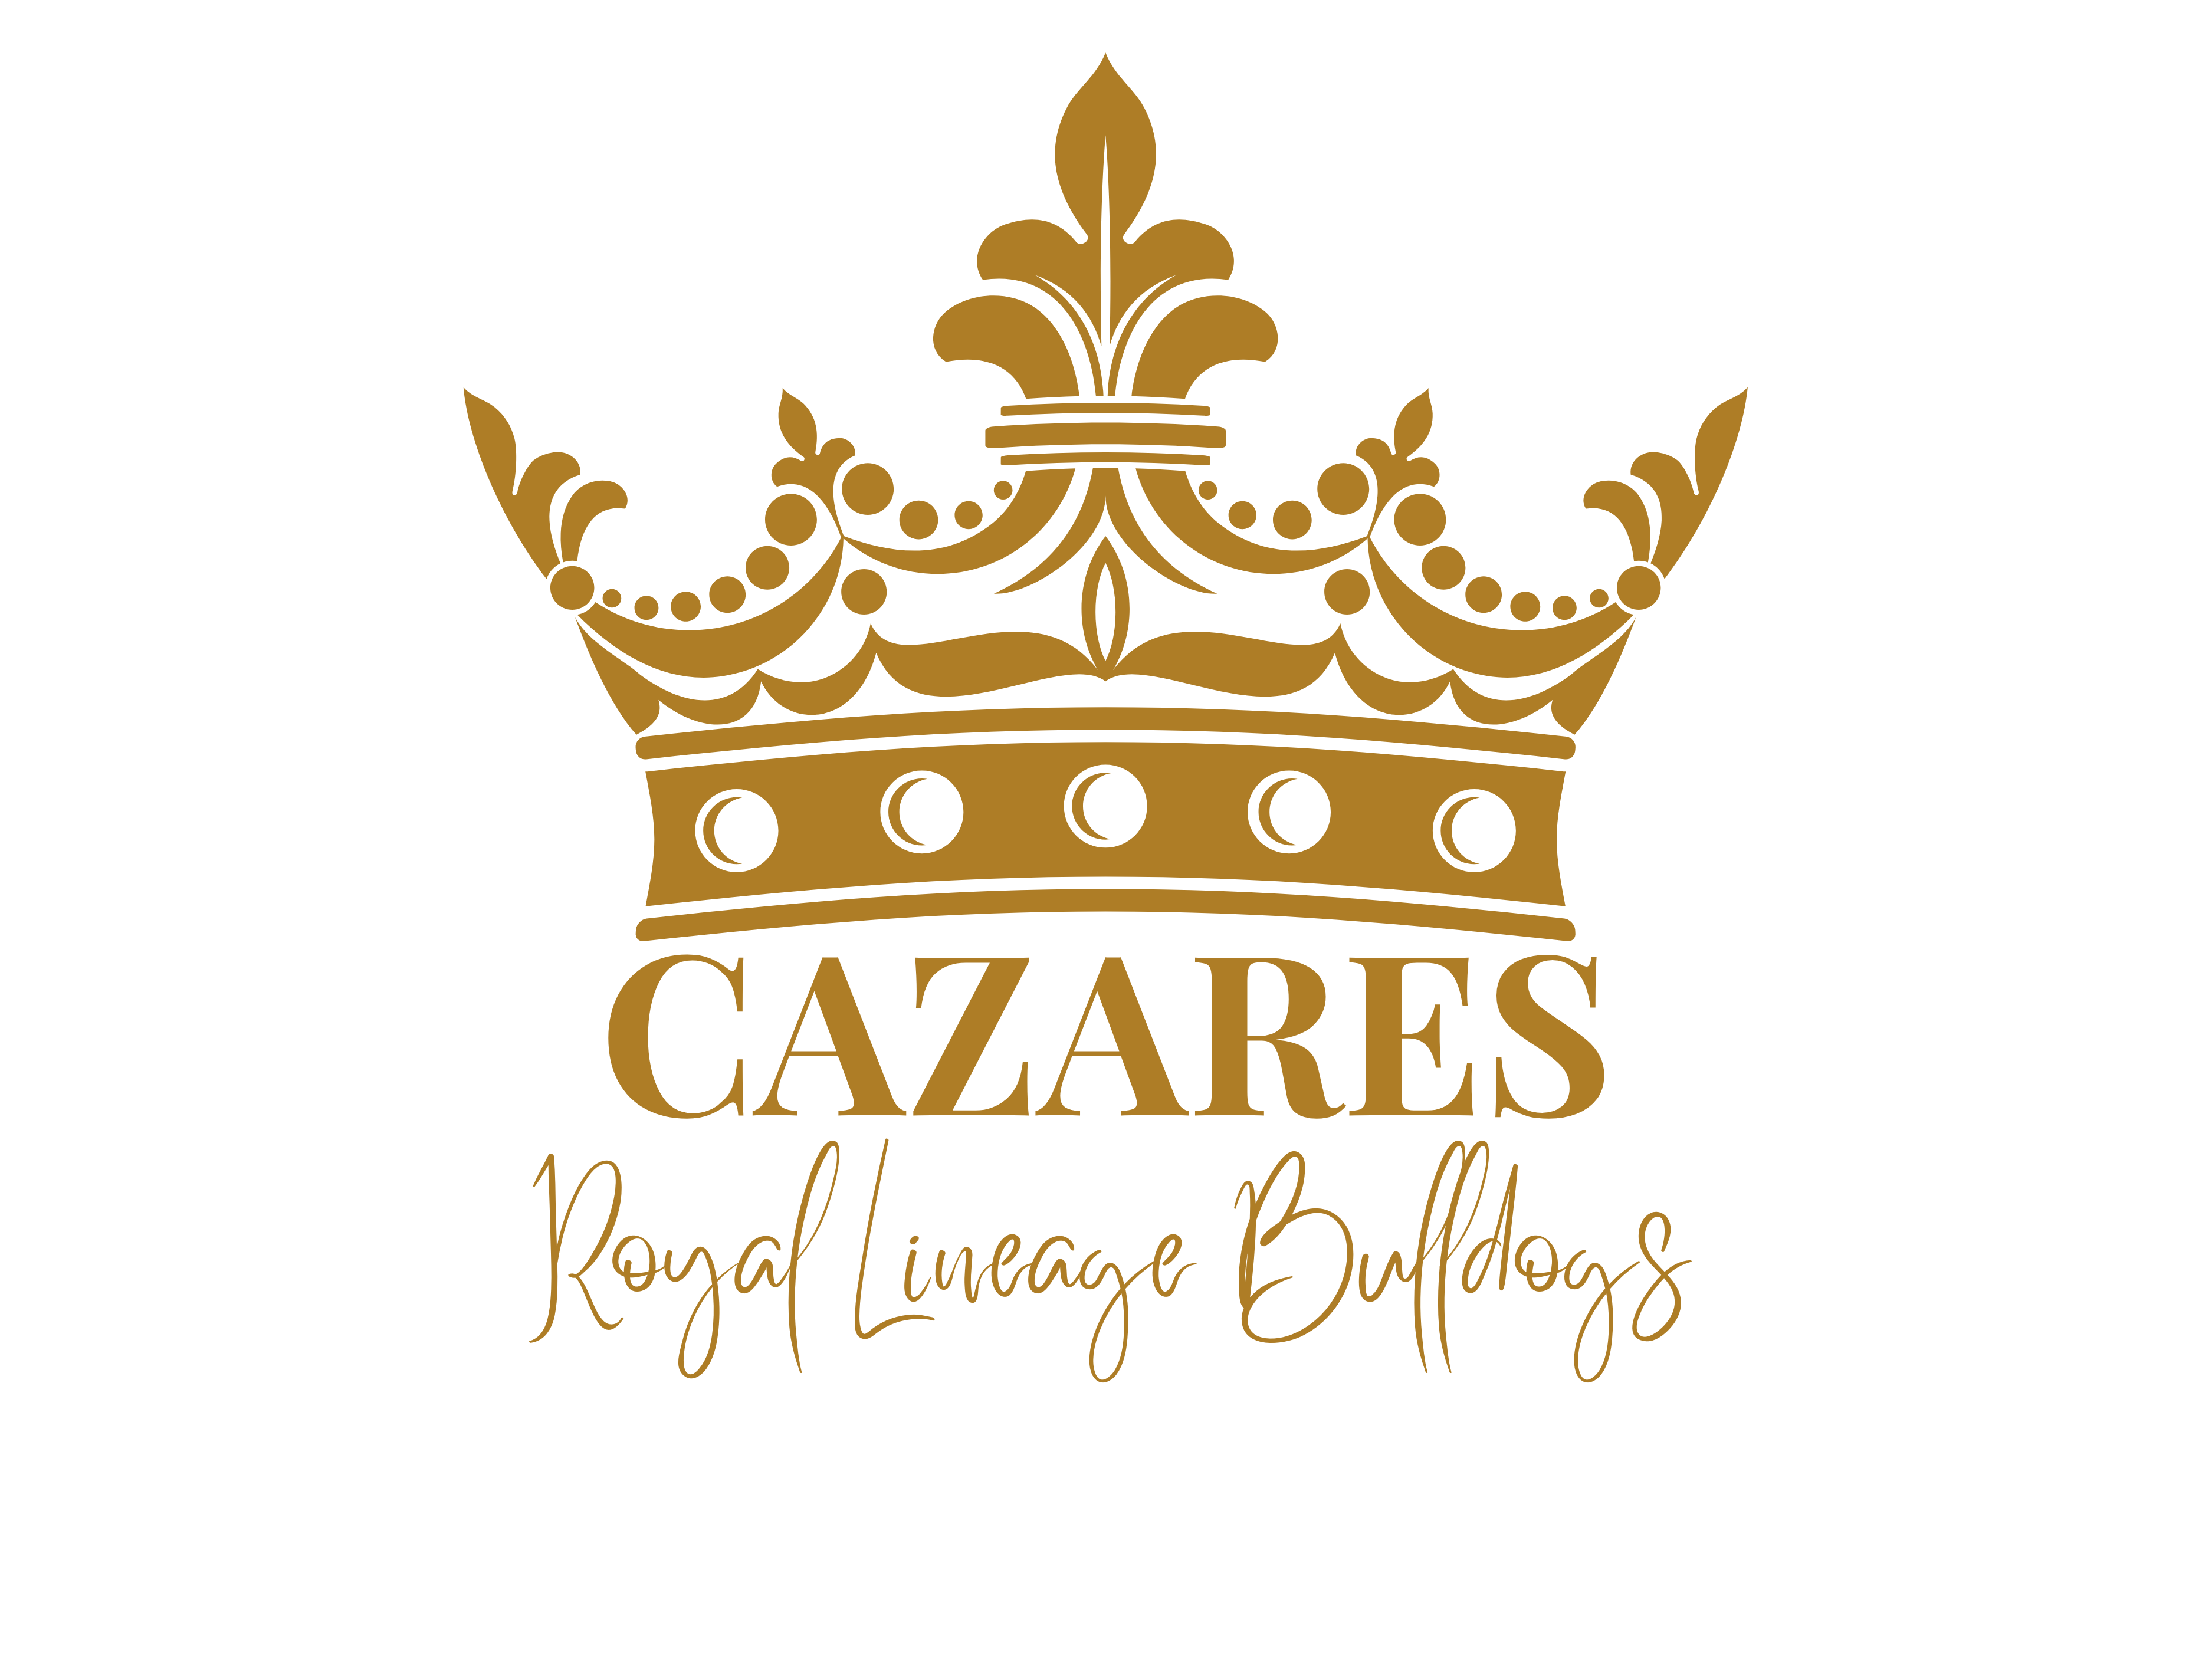 CAZARES ROYAL LINEAGE BULLDOGS